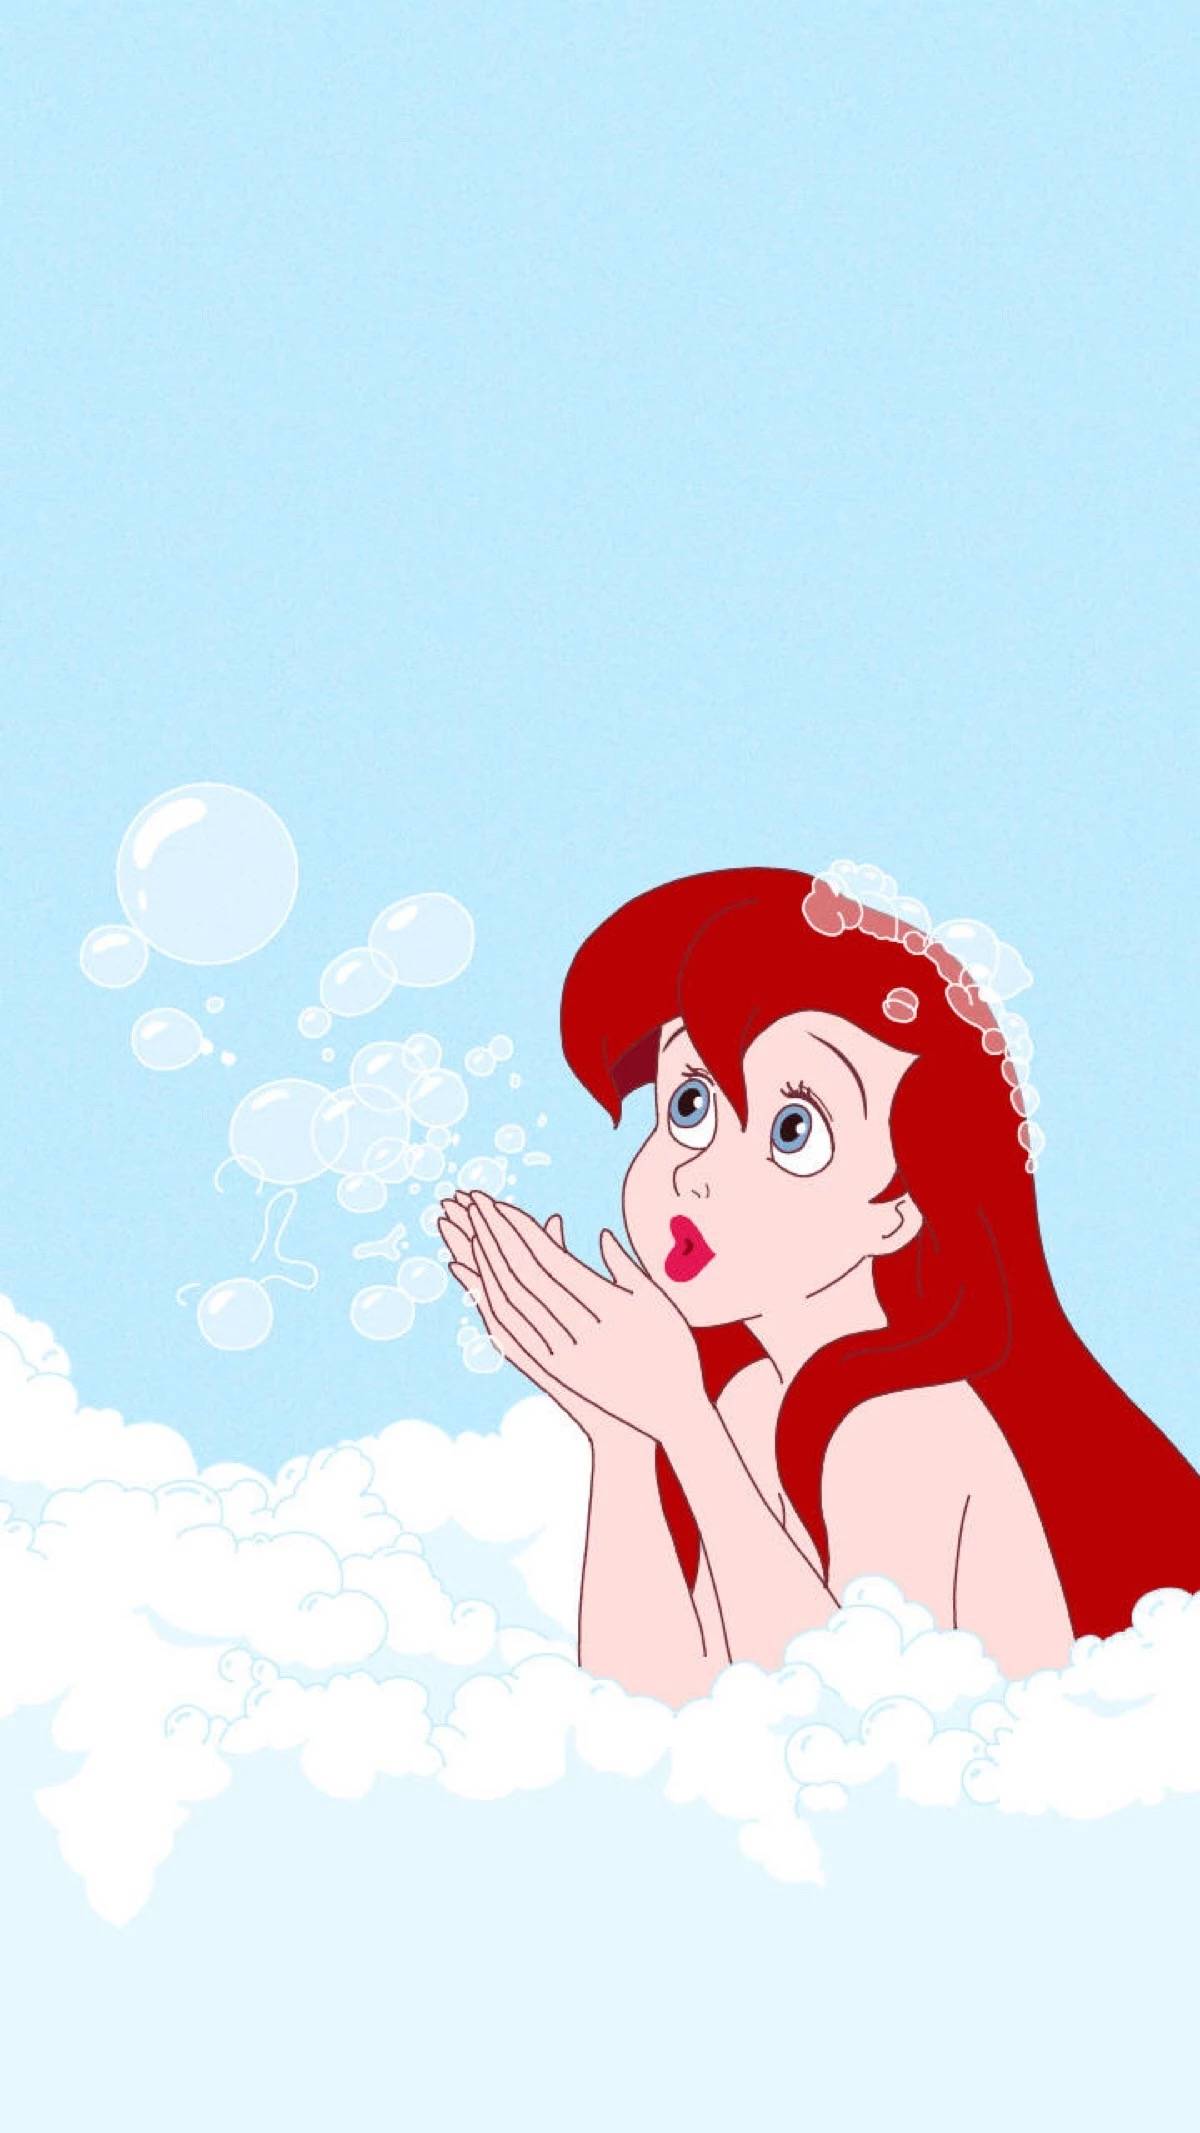 The Little Mermaid Ariel_Who is Mermaid Ariel_The Little Mermaid Ariel